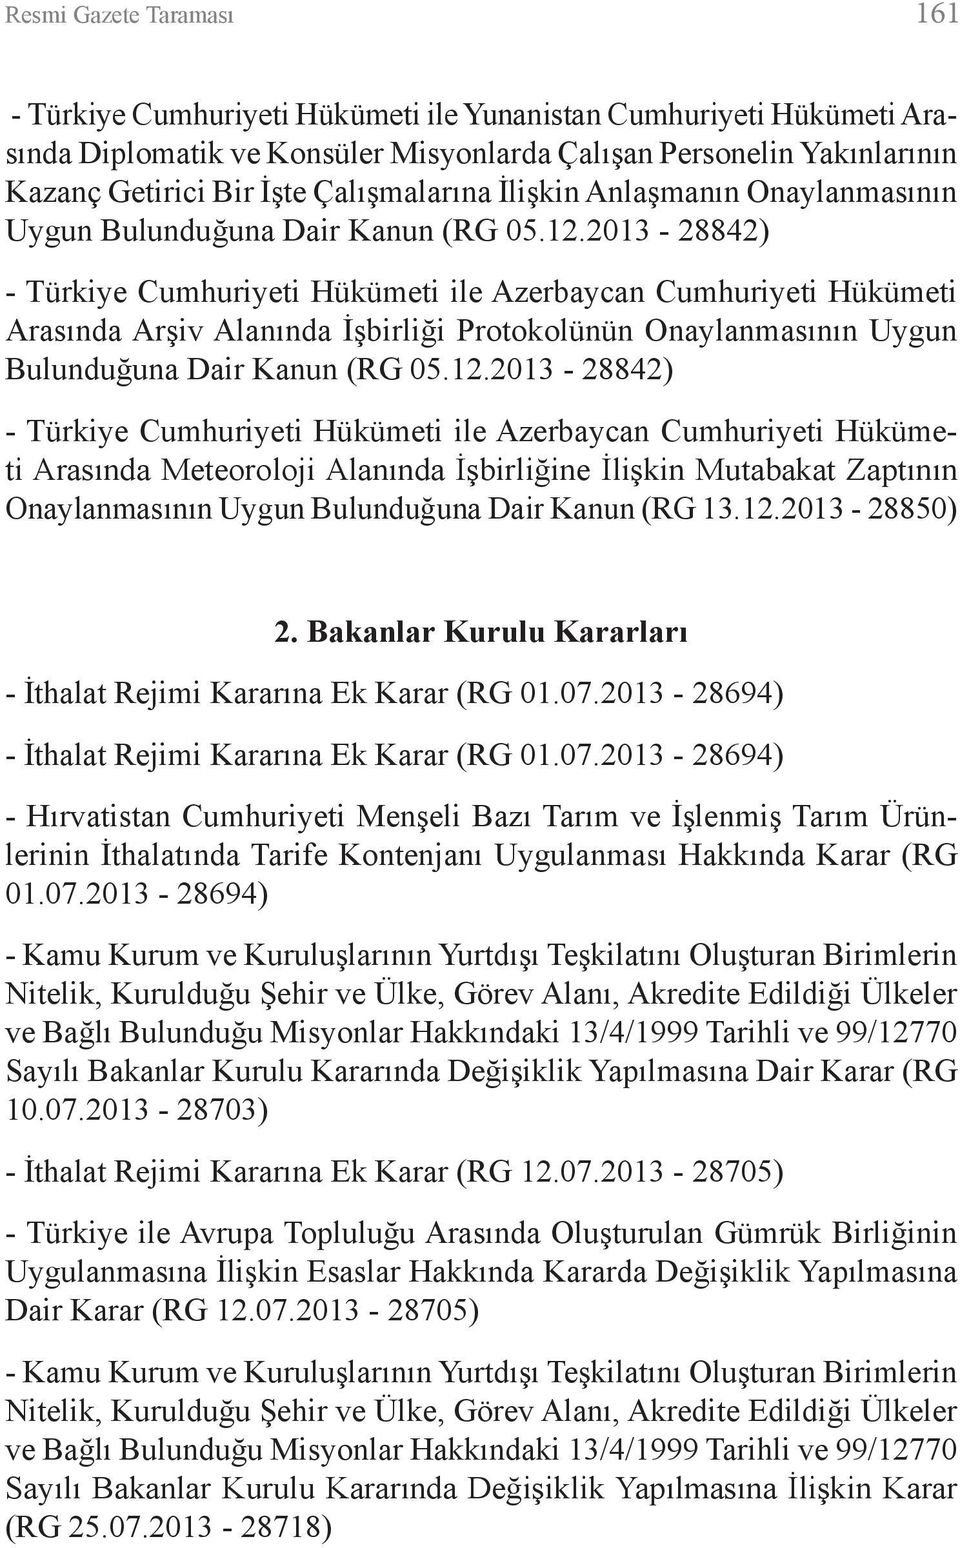 2013-28842) - Türkiye Cumhuriyeti Hükümeti ile Azerbaycan Cumhuriyeti Hükümeti Arasında Arşiv Alanında İşbirliği Protokolünün Onaylanmasının Uygun Bulunduğuna Dair Kanun (RG 05.12.